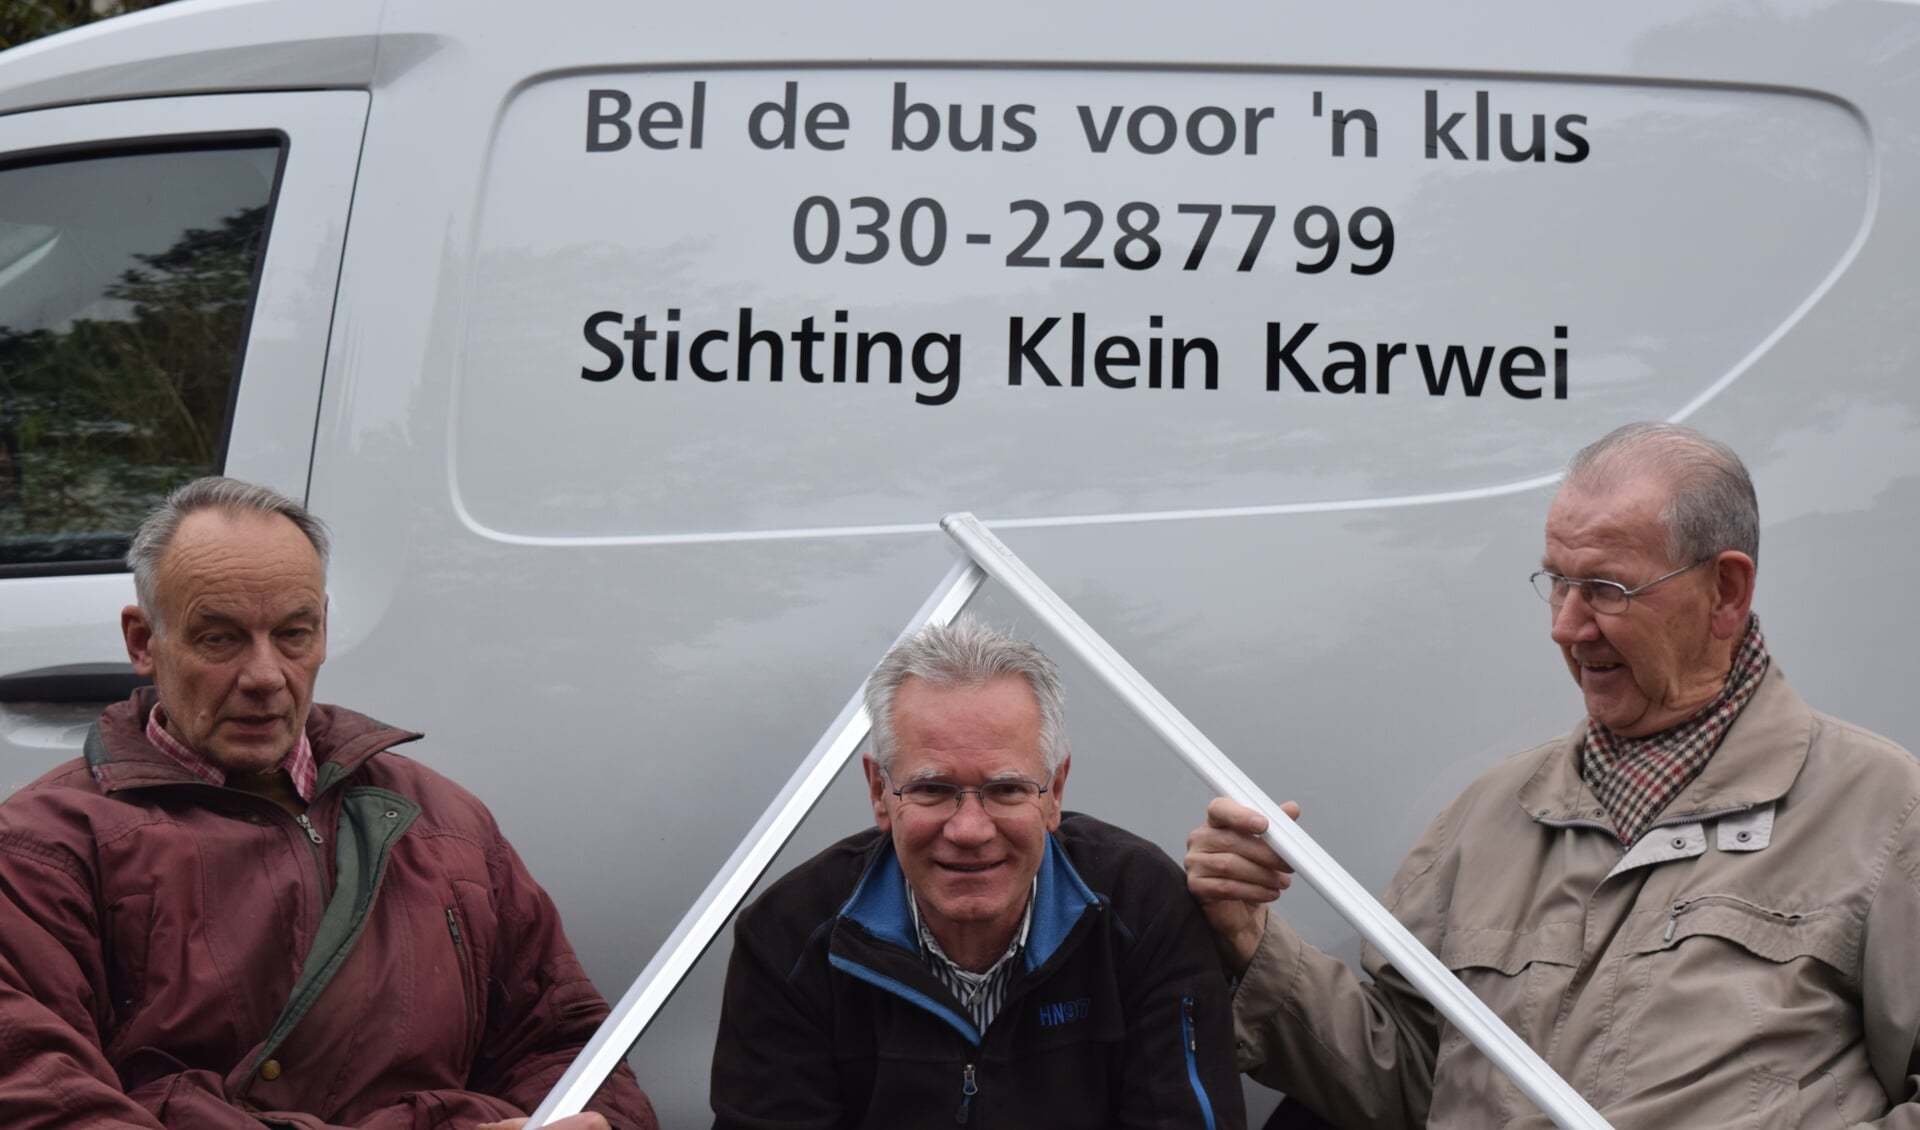  Kasper Hamster, Jeroen de Groot en Wim Hugens hopen dat vele aanvragen binnenstromen.